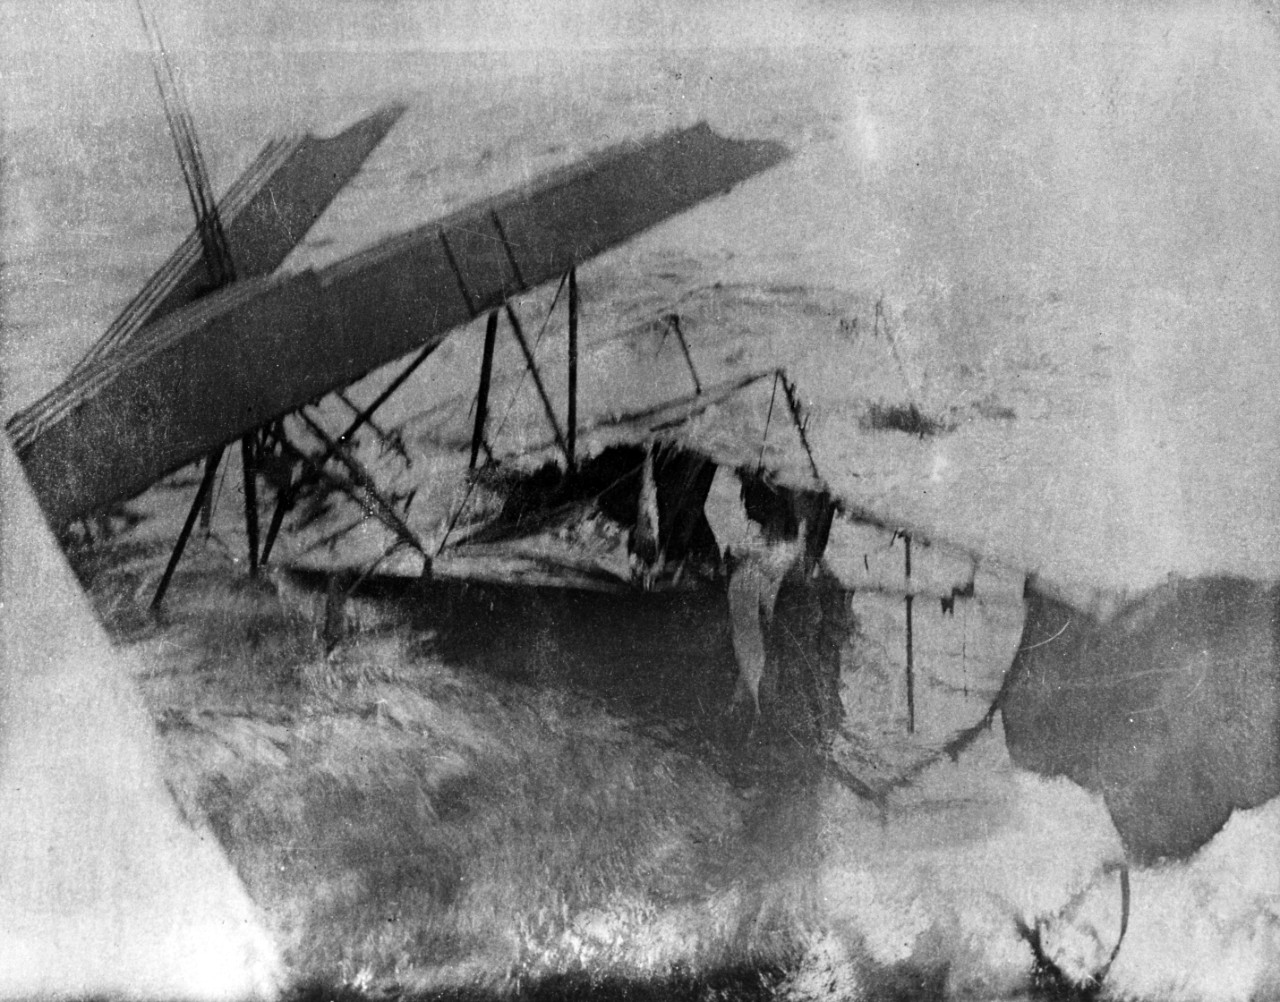 Wreck of a British aircraft, circa 1914-1916